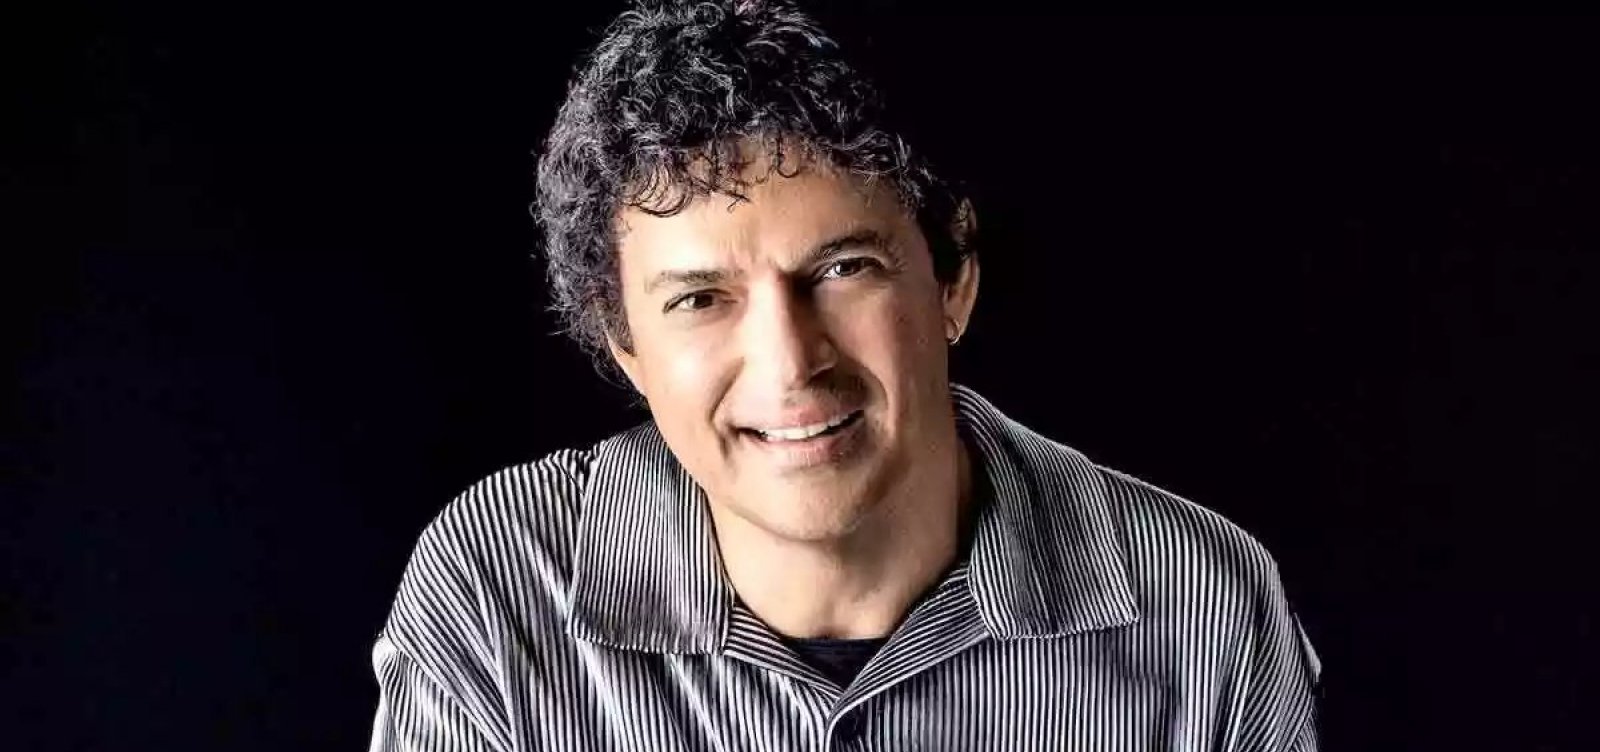 Jorge Vercillo comemora 30 anos de carreira com show na Concha Acústica do TCA